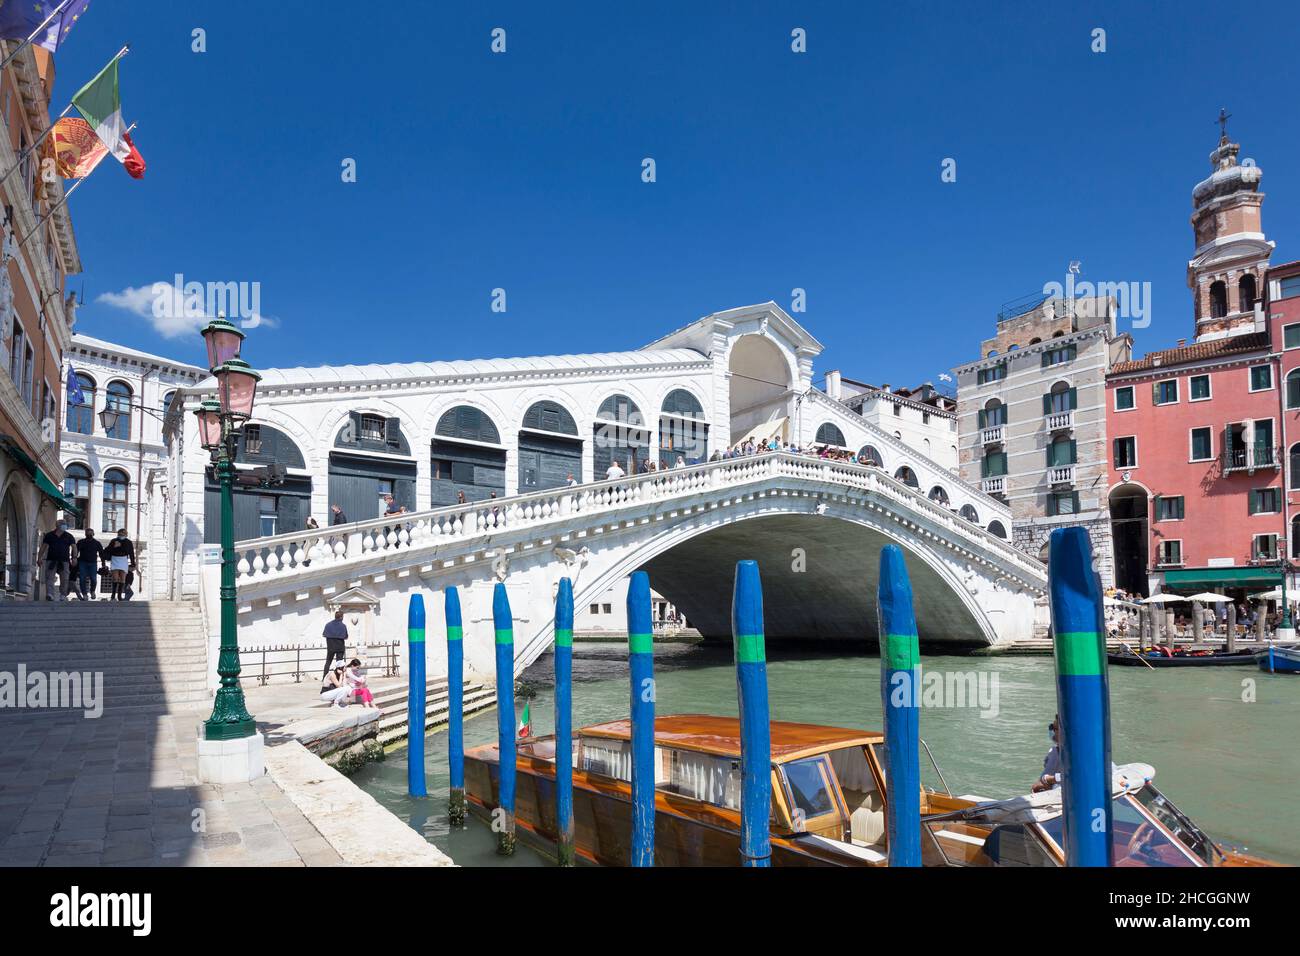 Rialto bridge, Venice, Italy Stock Photo